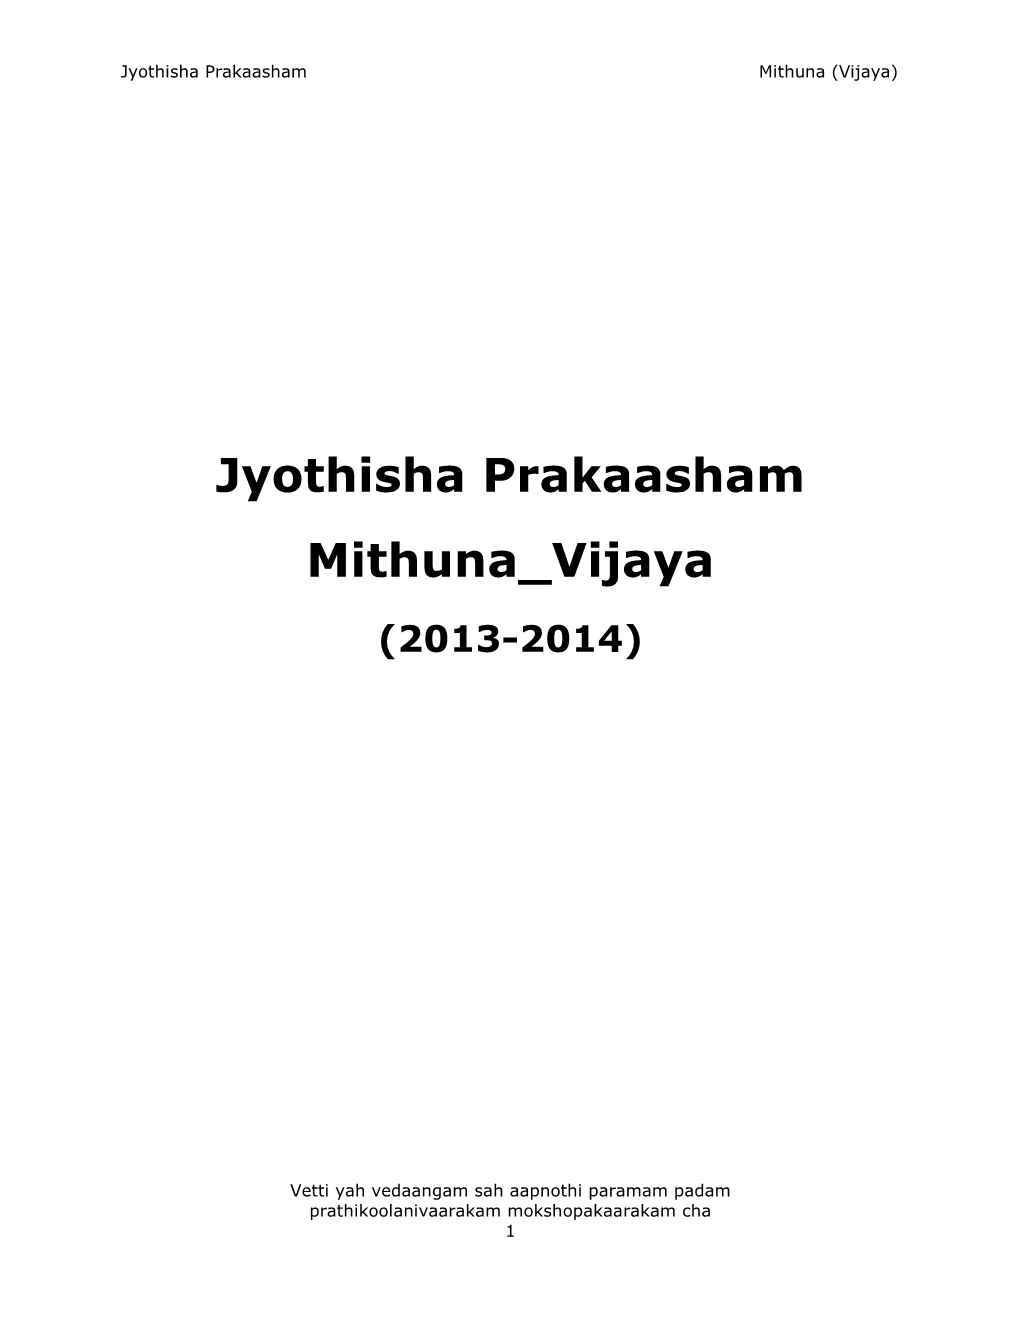 Jyothisha Prakaasham Mithuna Vijaya